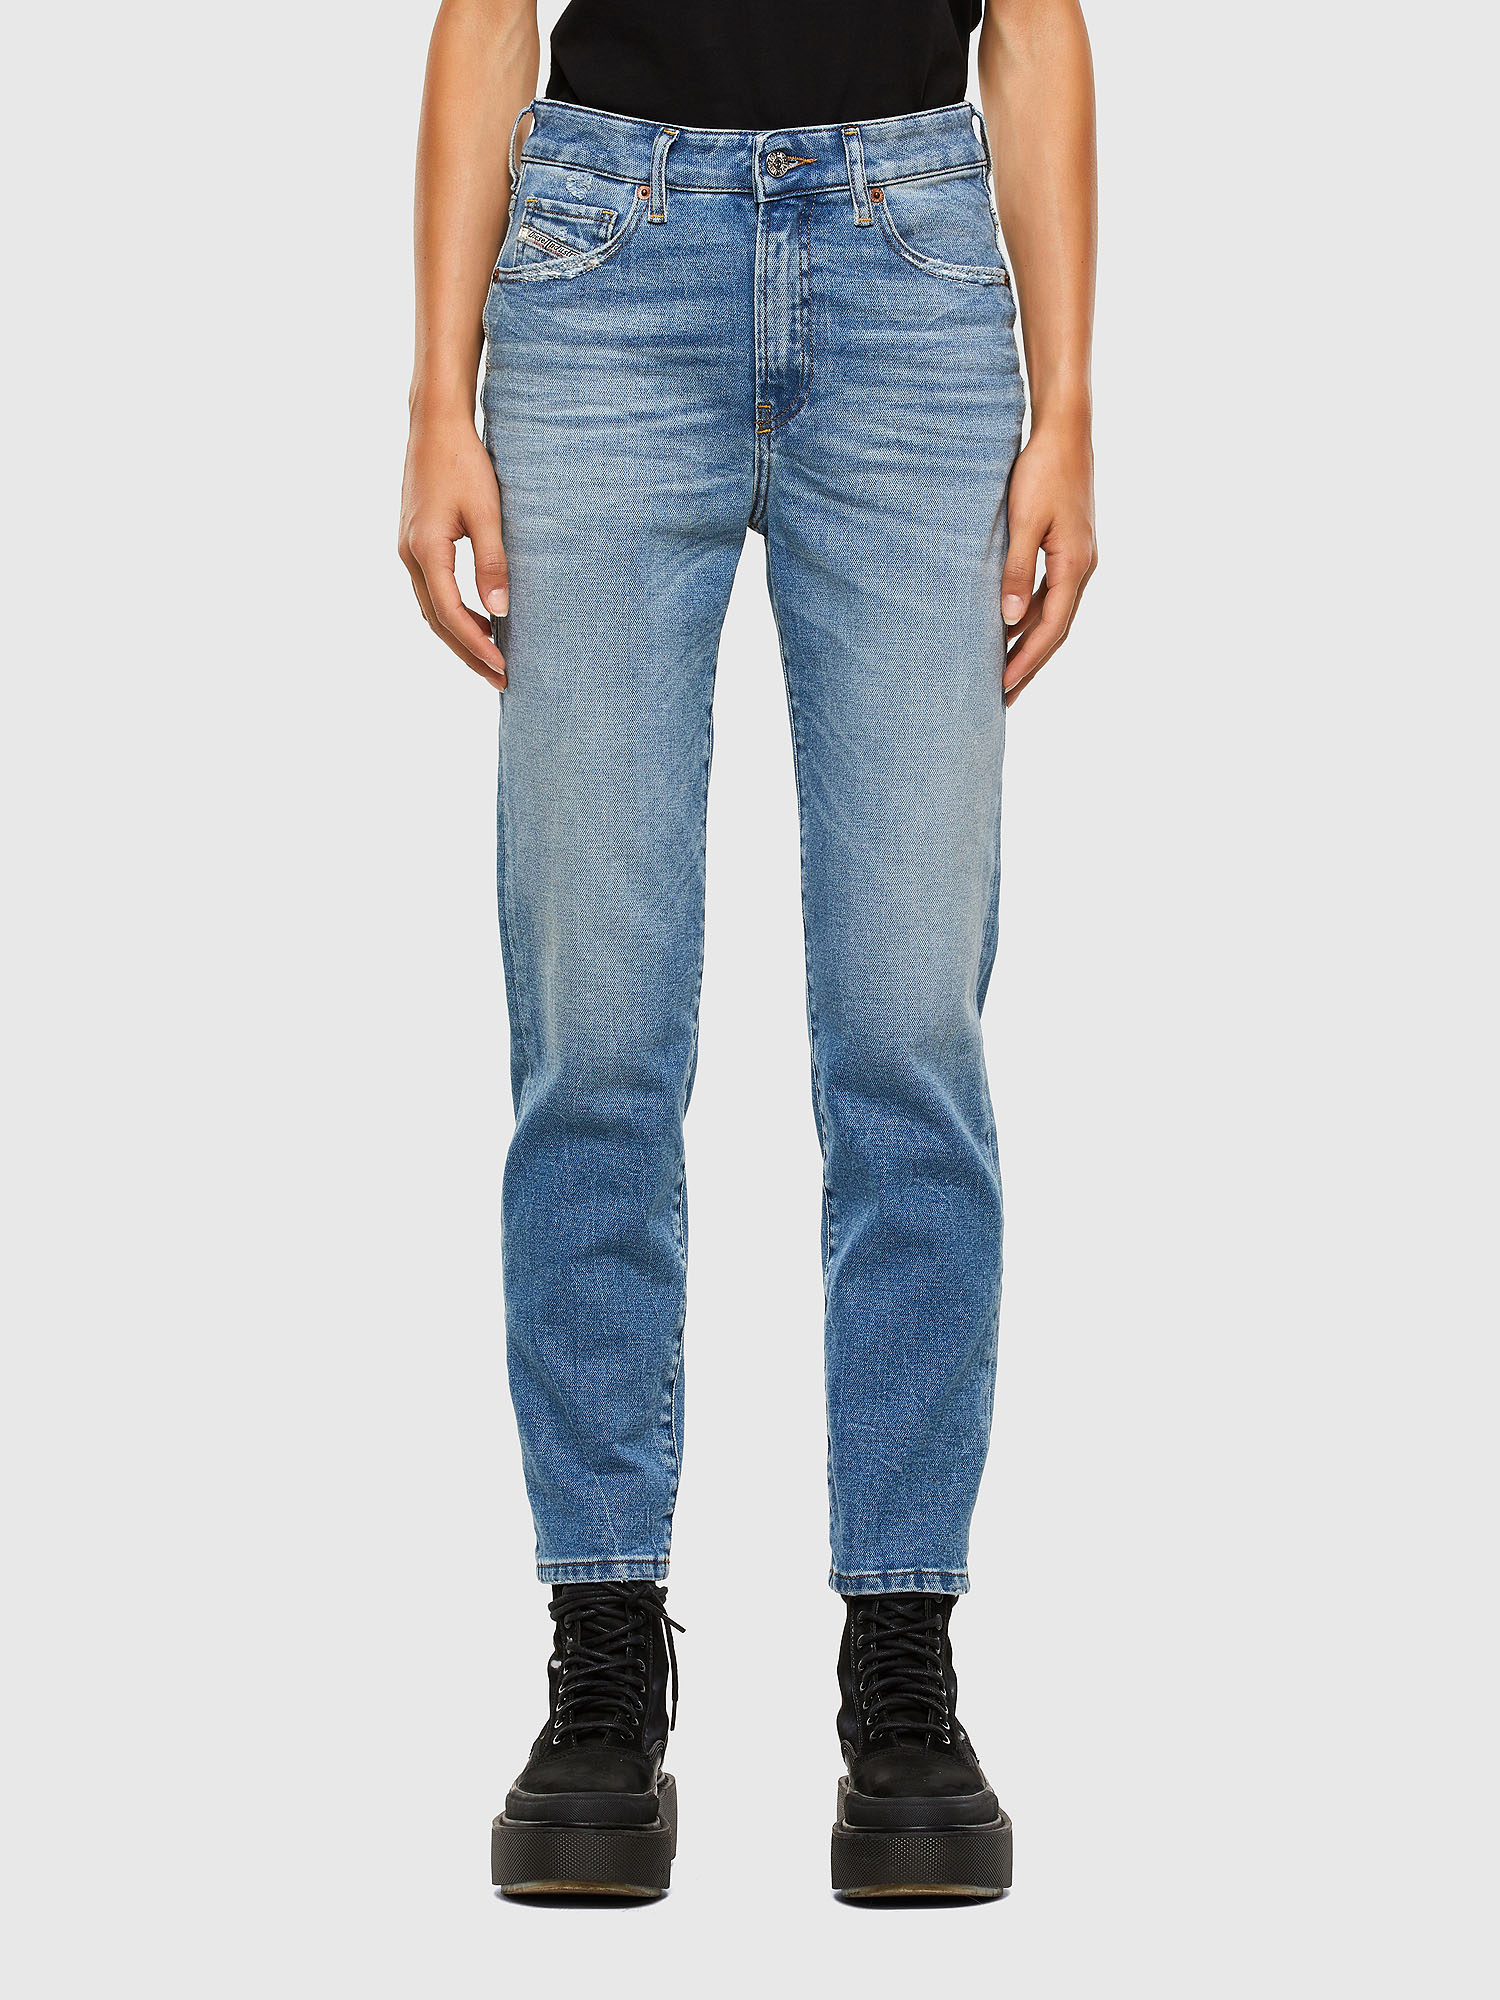 Diesel - D-Joy 009EU Slim Jeans,  - Image 1